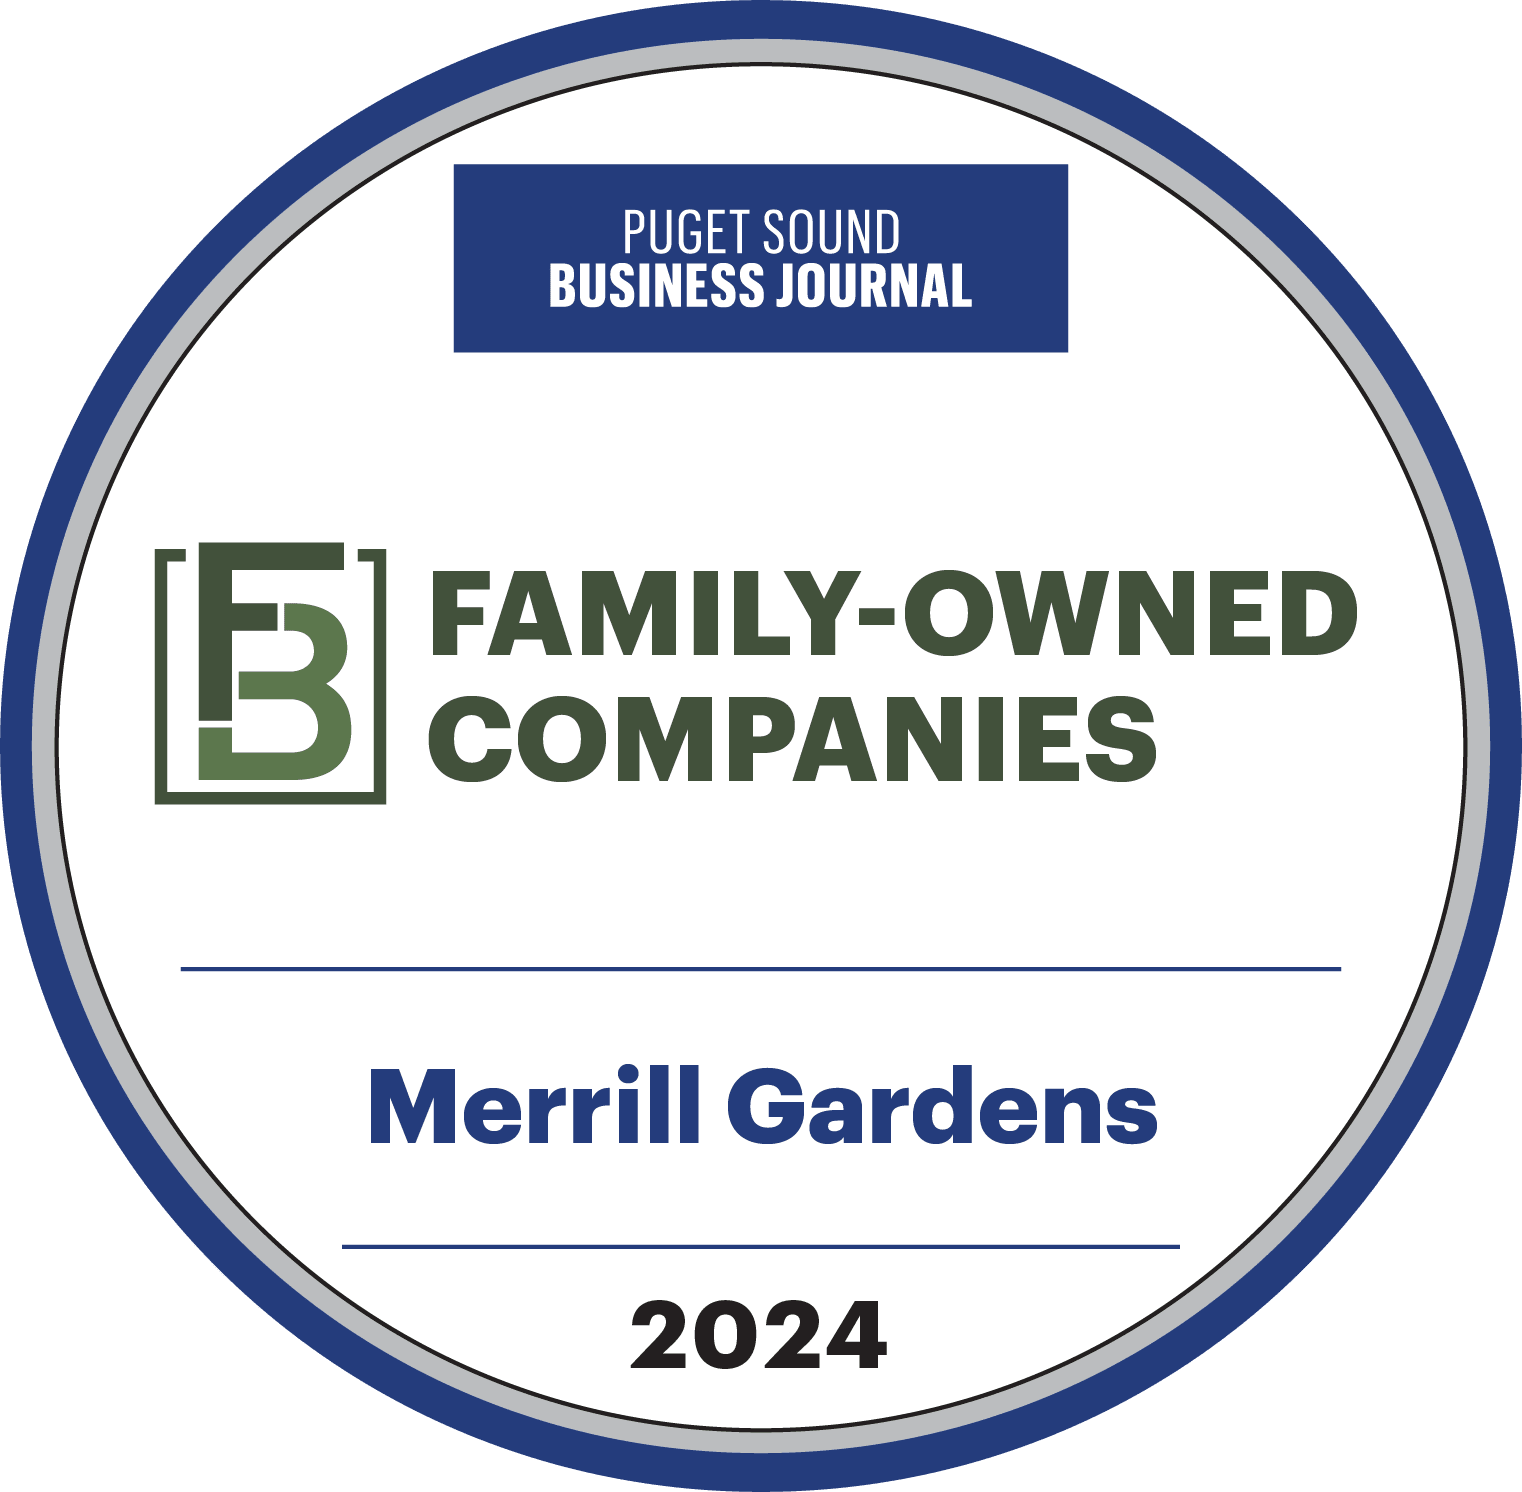 Merrill Gardens family business